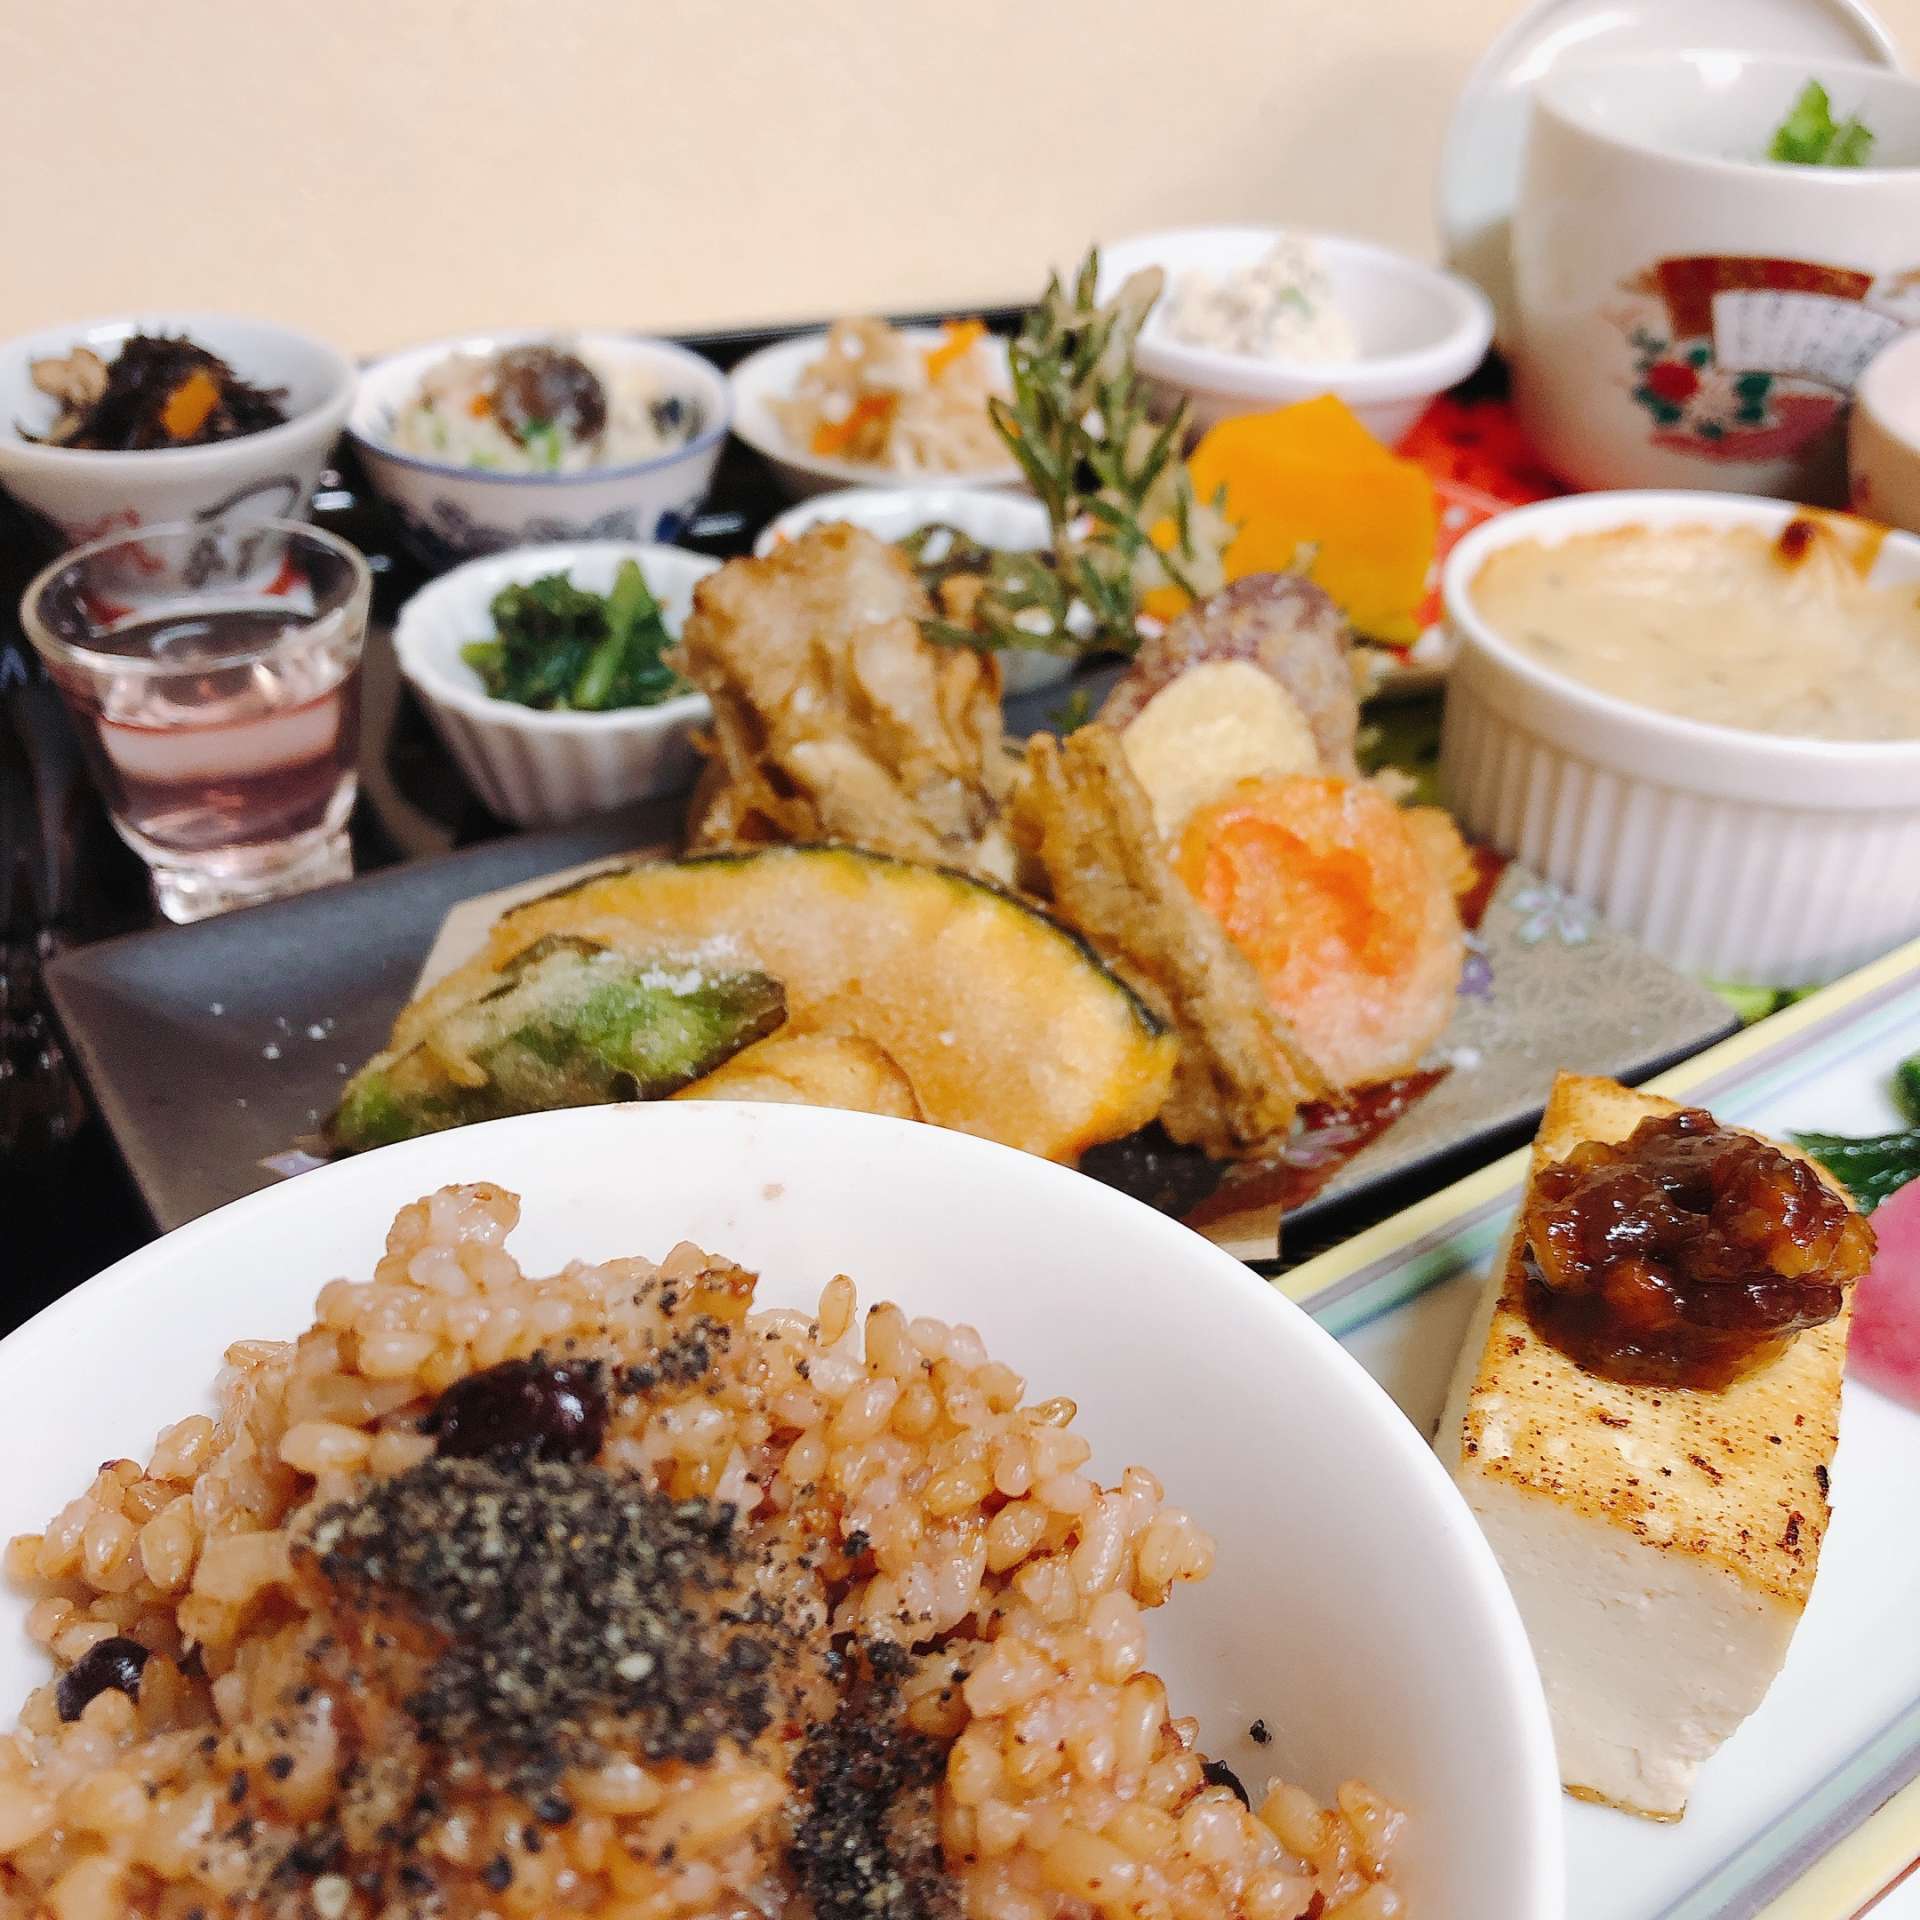 奈良でおすすめ 和食ランチなら町屋カフェ朋花へ 健康管理士の資格を持つ近鉄奈良駅でカフェを営む店主が豆知識をご紹介